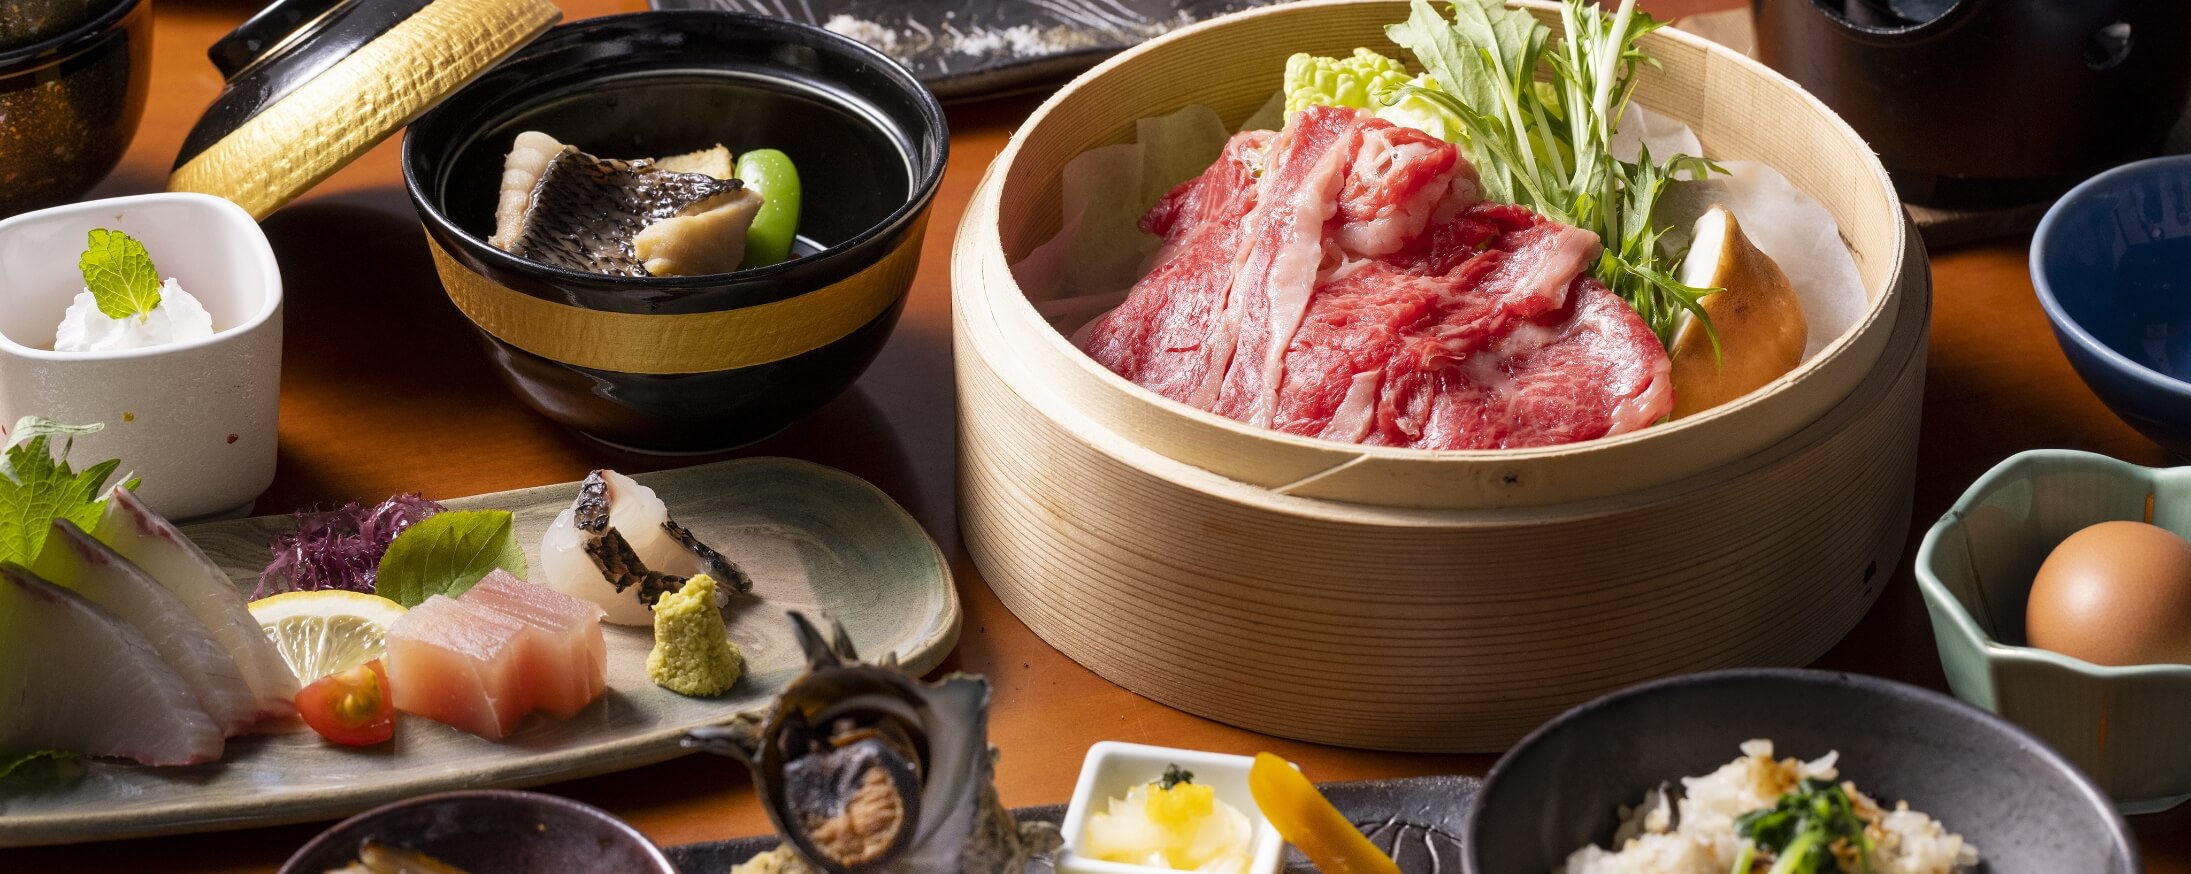 彩り豊かな長崎の食文化を五感で味わう。